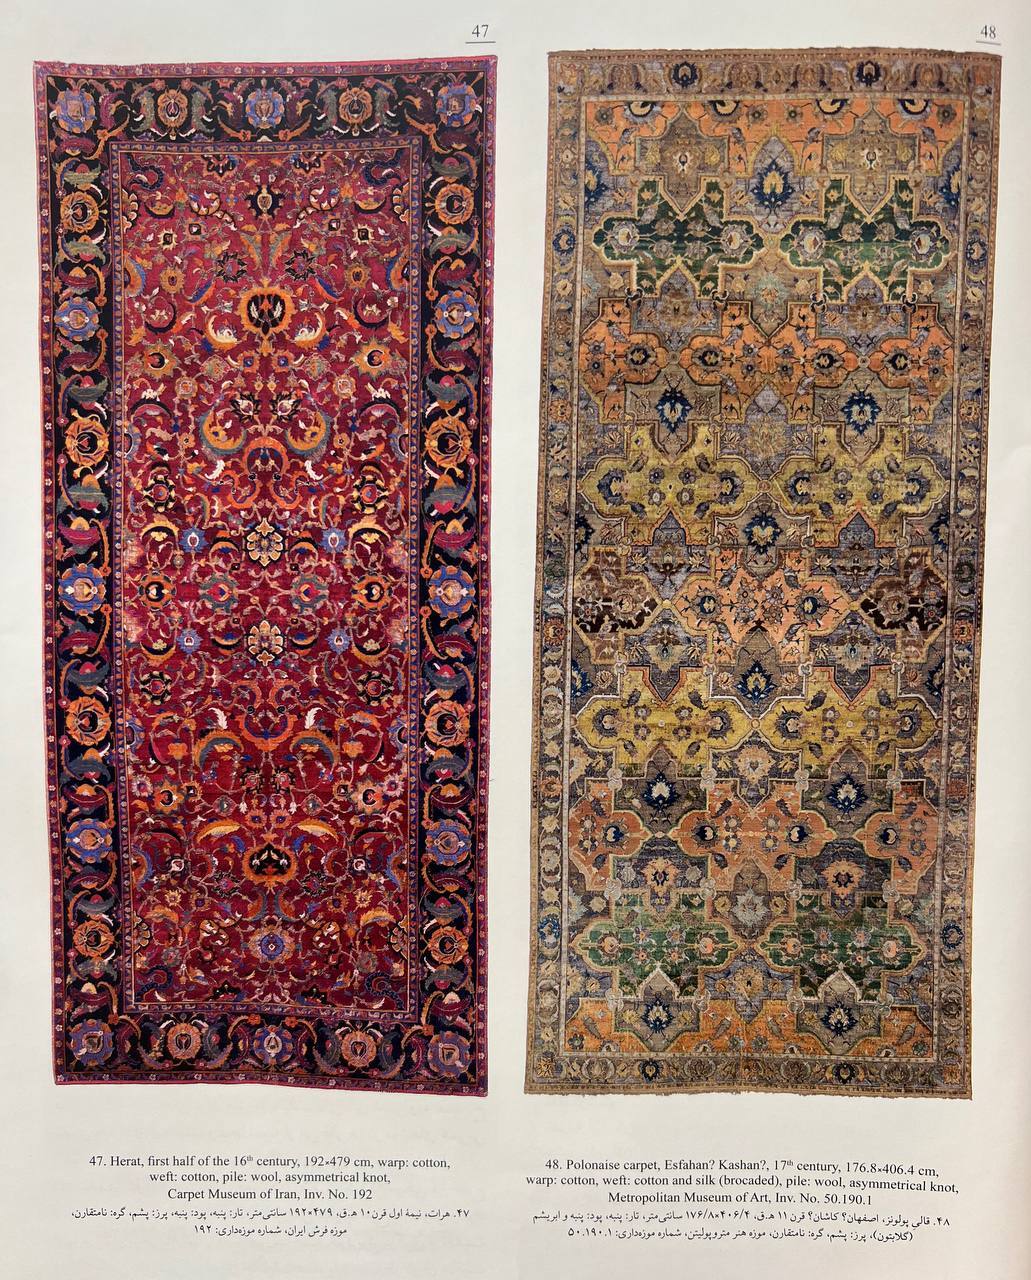 Iranian rug in the Safavid era